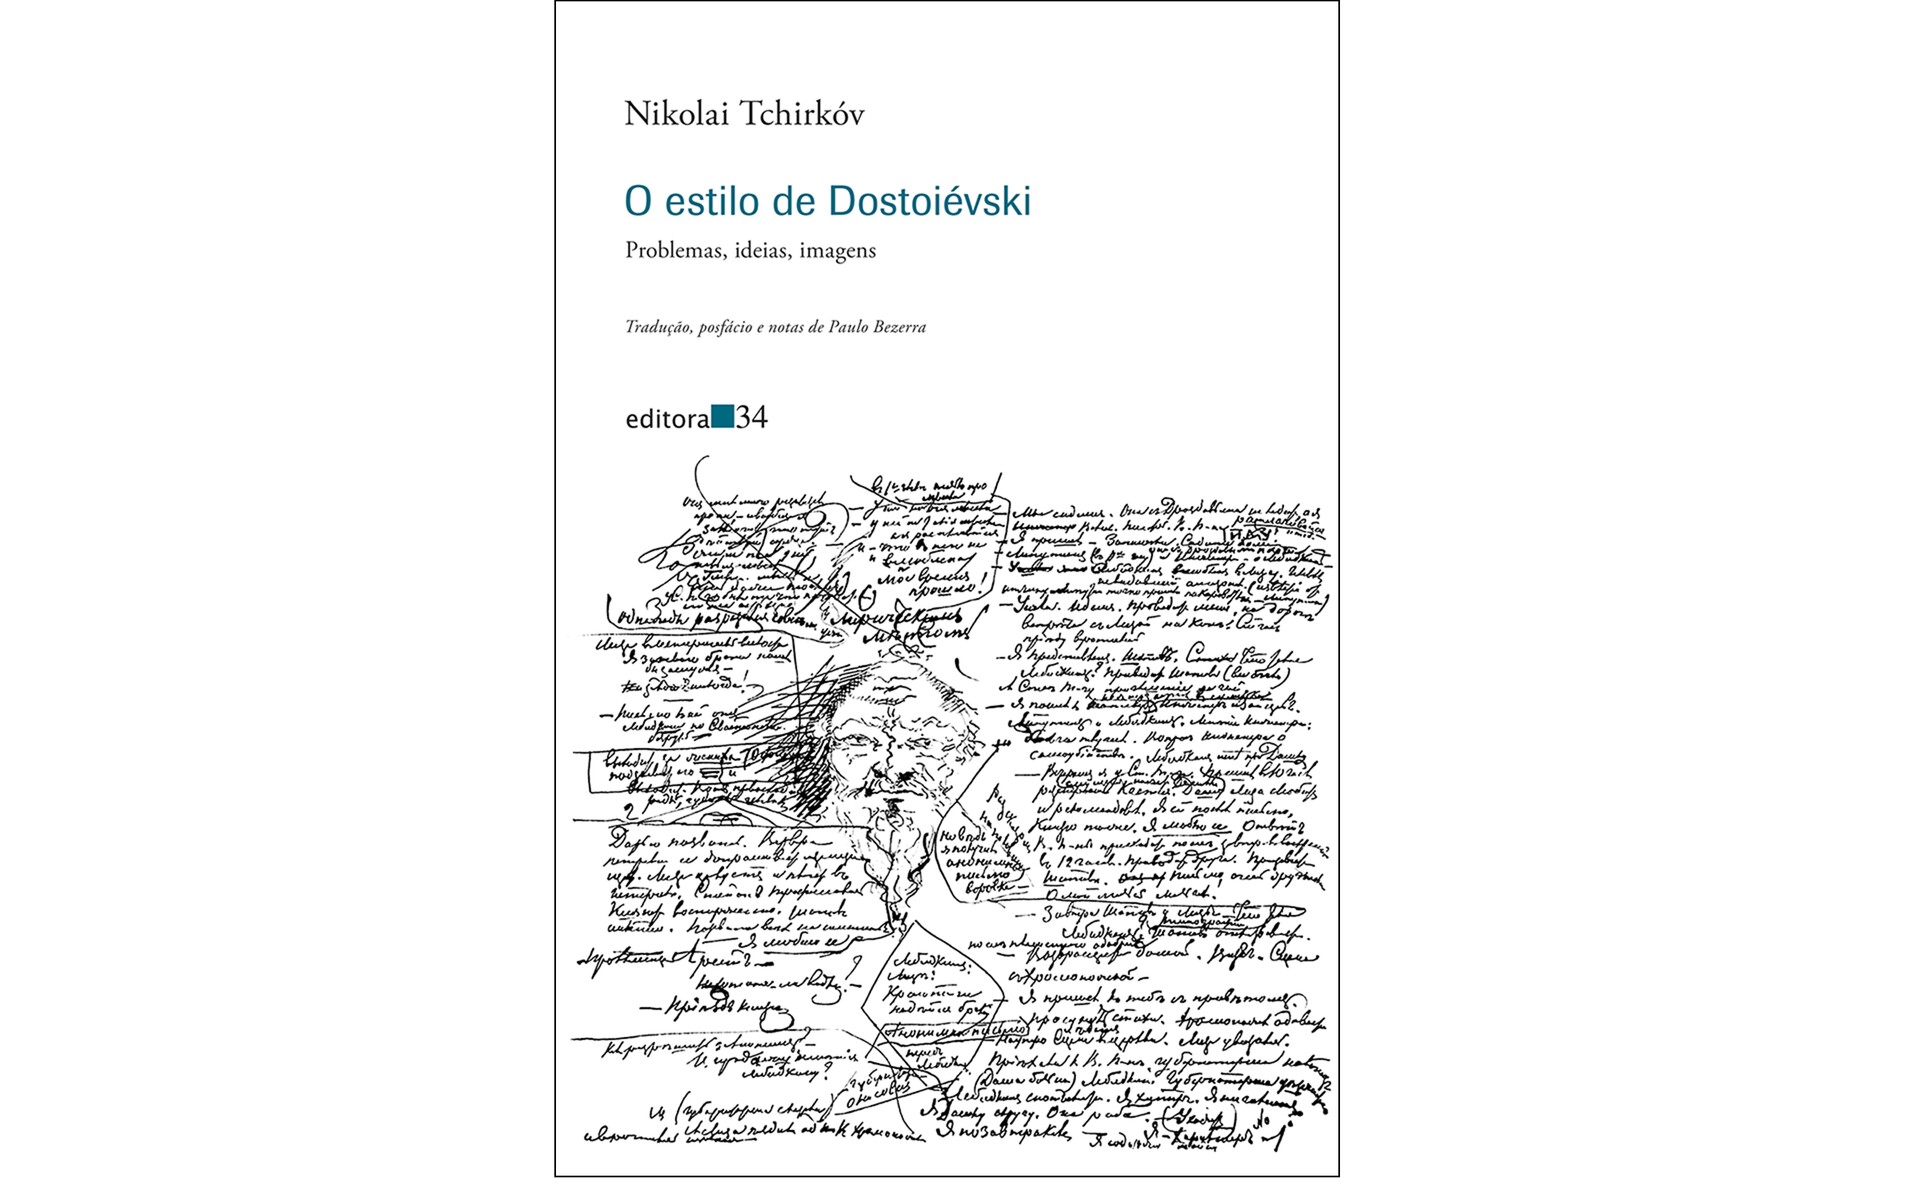 Isabella Bezerra-Rigby - Proofreader - Just Traduções